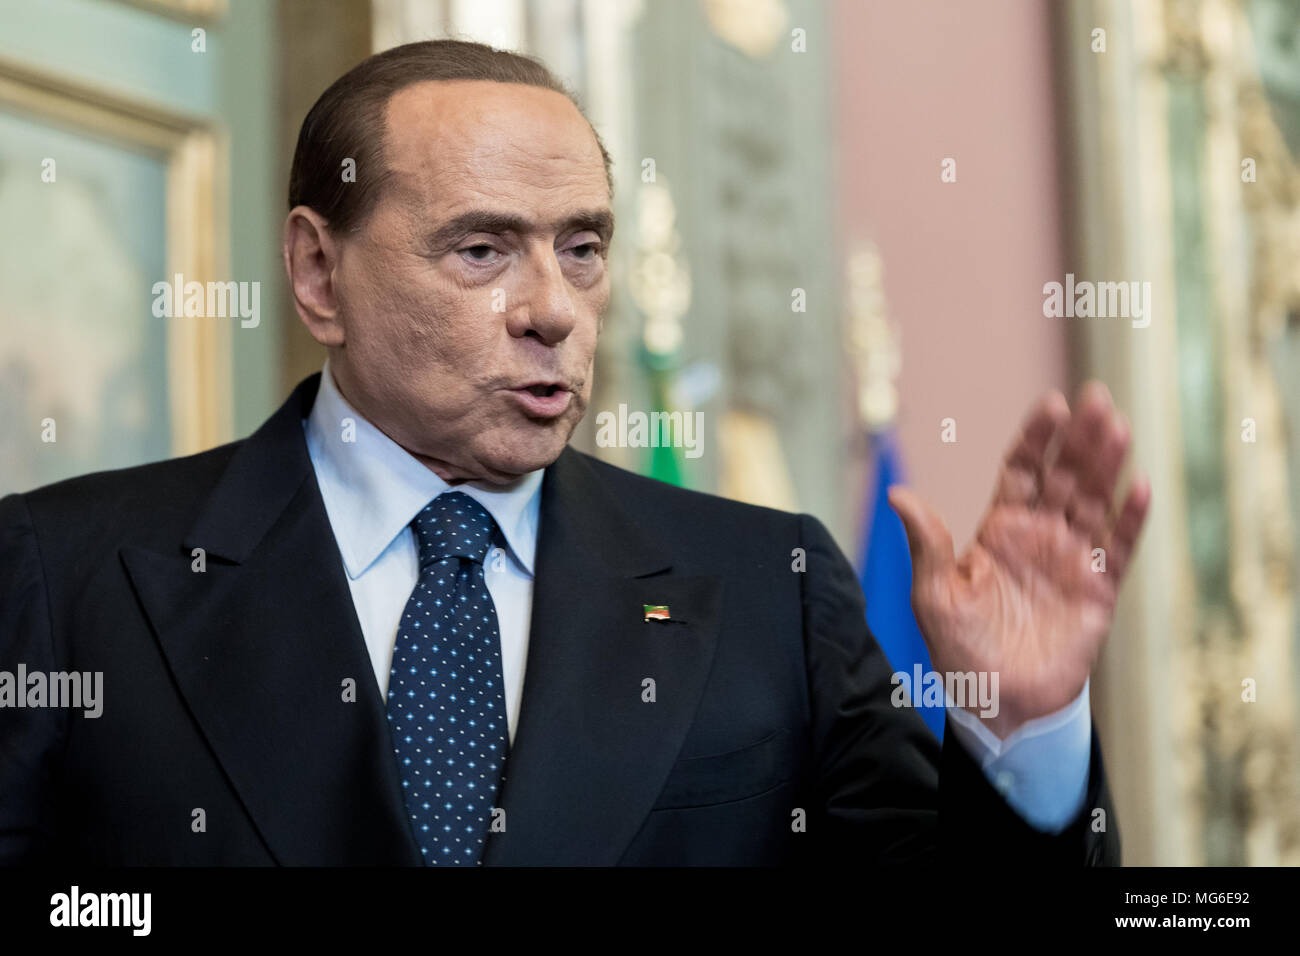 Silvio Berlusconi, der Chef der Forza Italia Party, nach der Pressekonferenz im Senat der Italienischen Republik. Rom, Italien, 15. April 2018. Stockfoto